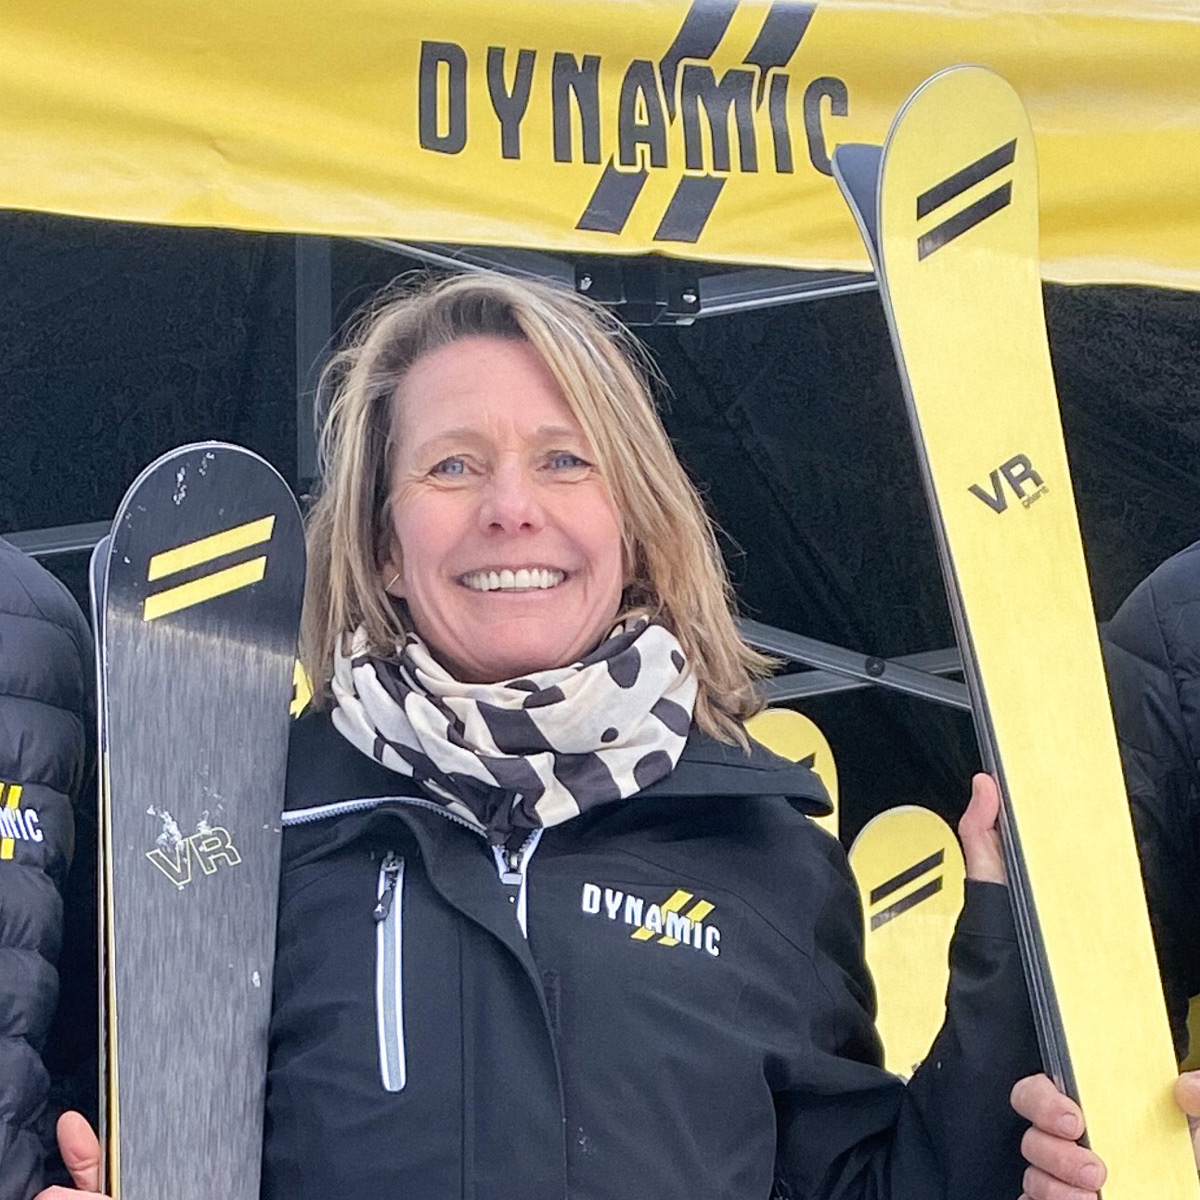 Ingrid Menet et les skis DYNAMIC